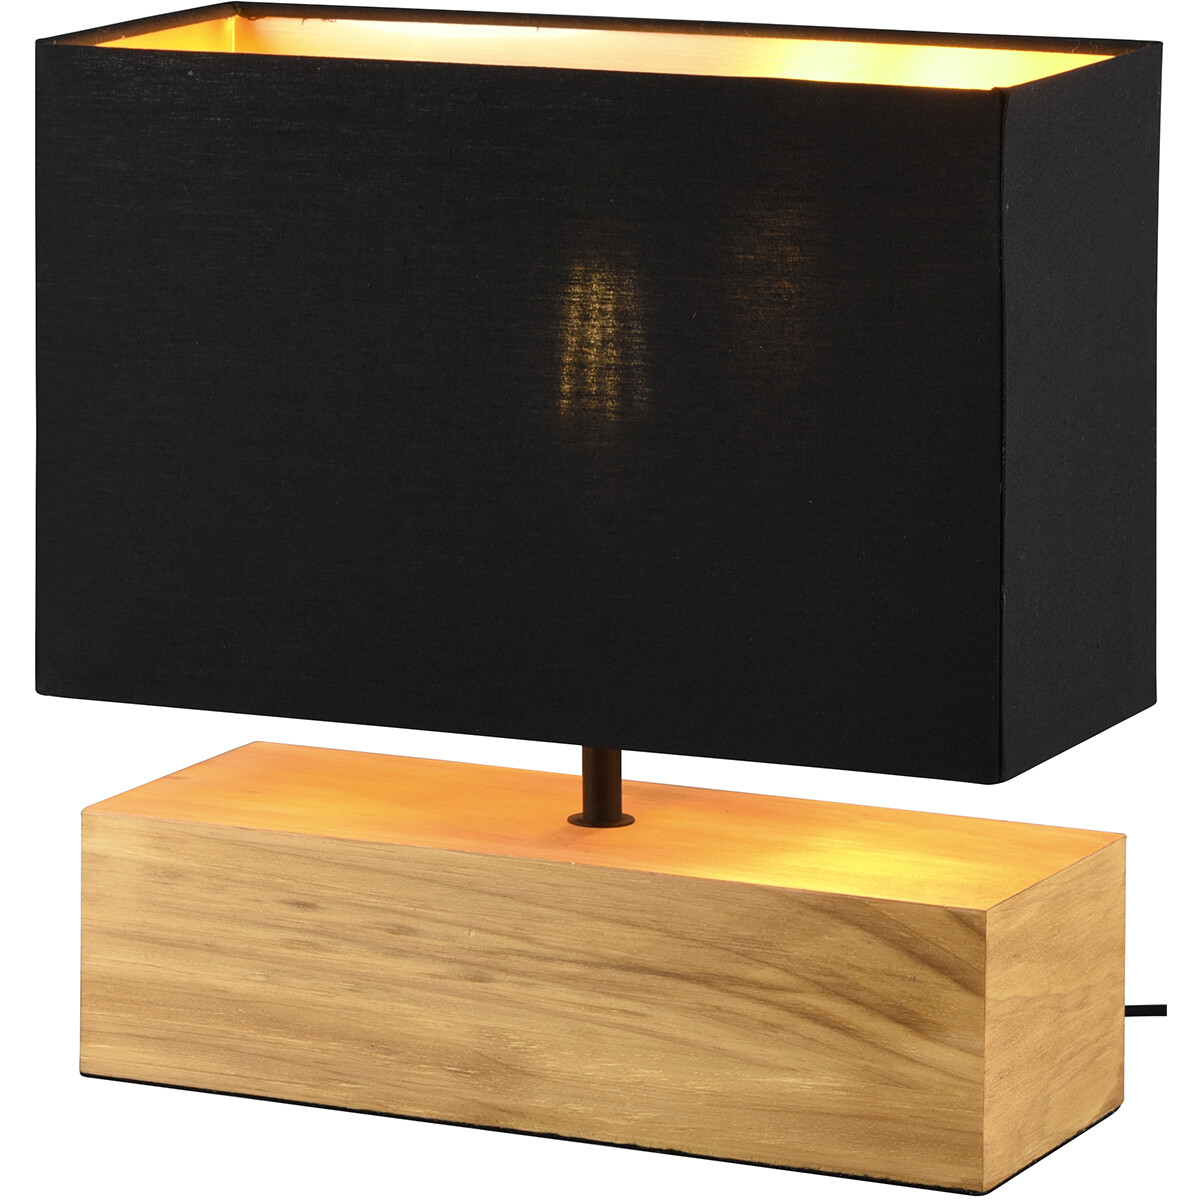 LED Tafellamp - Tafelverlichting - Trion Wooden - E27 Fitting - Rechthoek - Mat Zwart/Goud - Hout kopen?